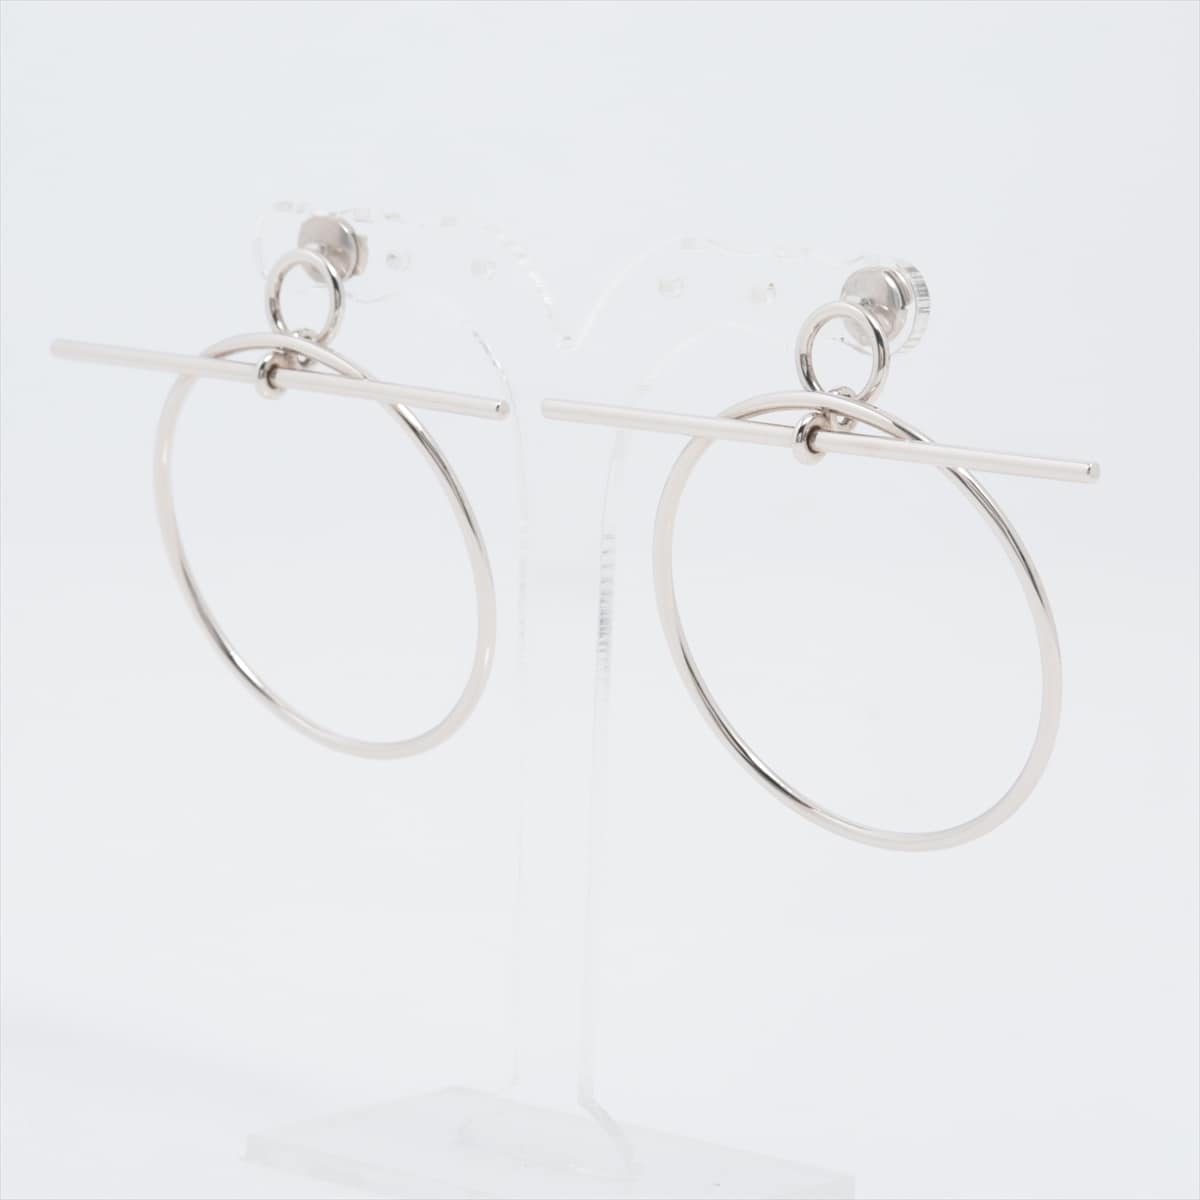 Hermès Loop Medium Piercing jewelry (for both ears) 925 11.0g Silver